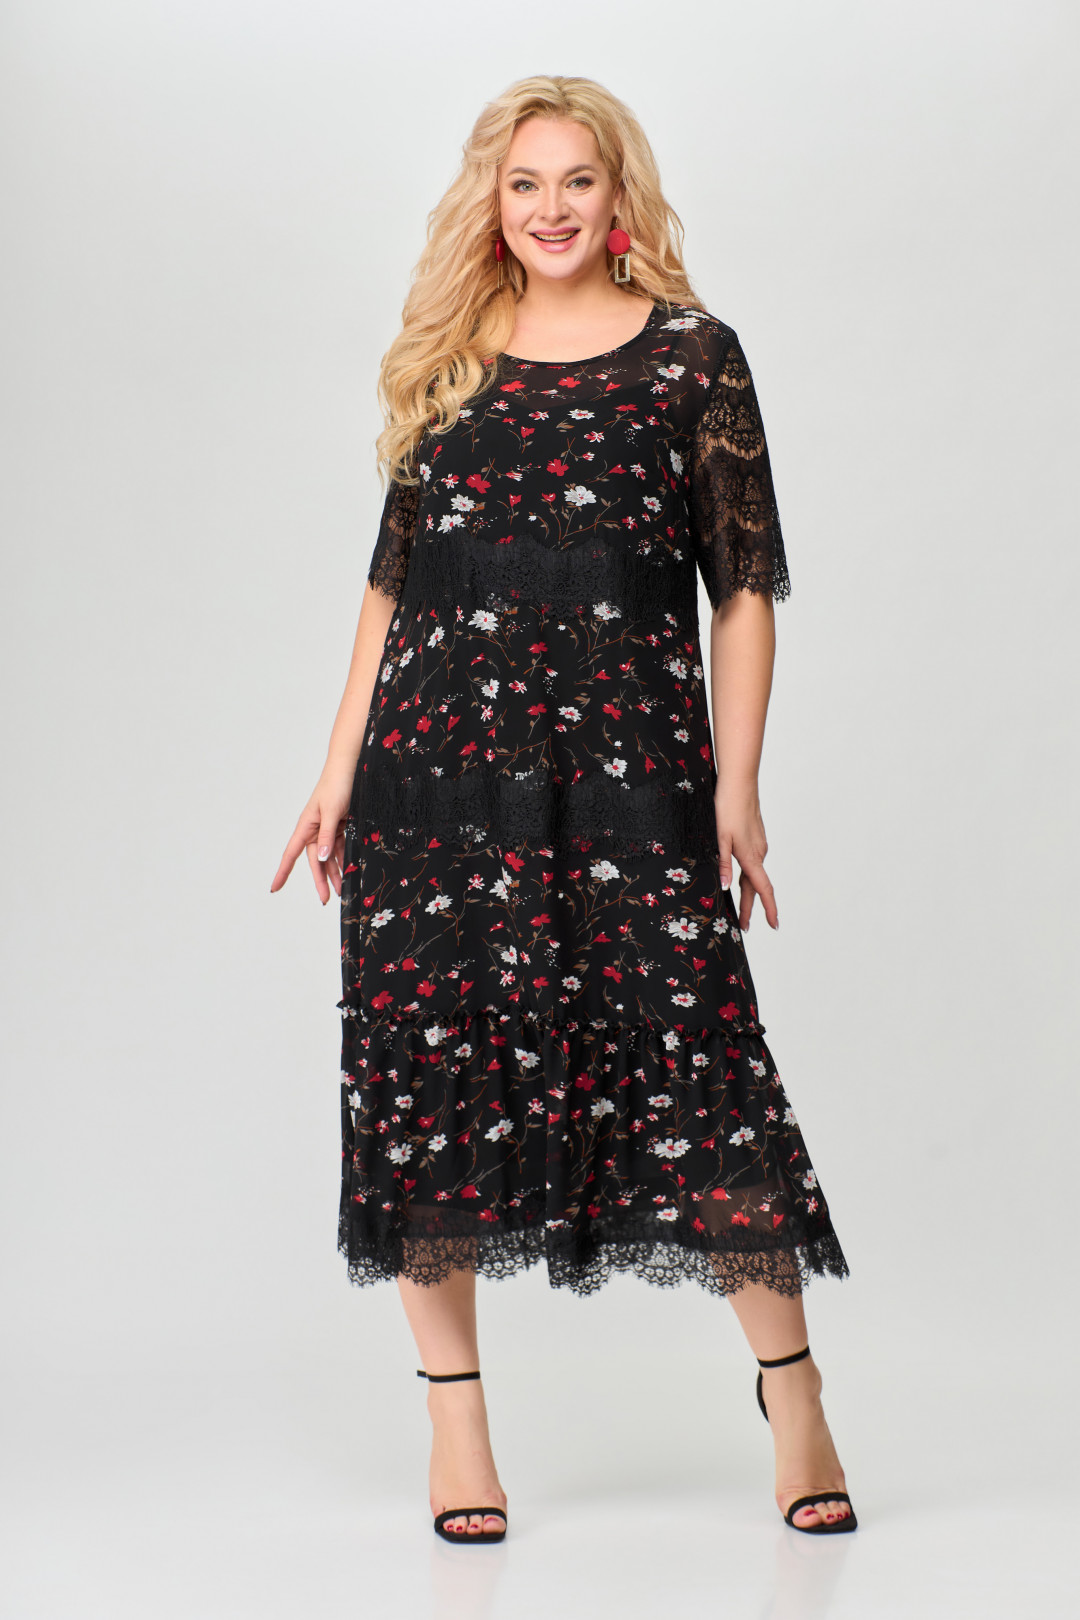 Платье Светлана-Стиль 1505 черный+красные цветы